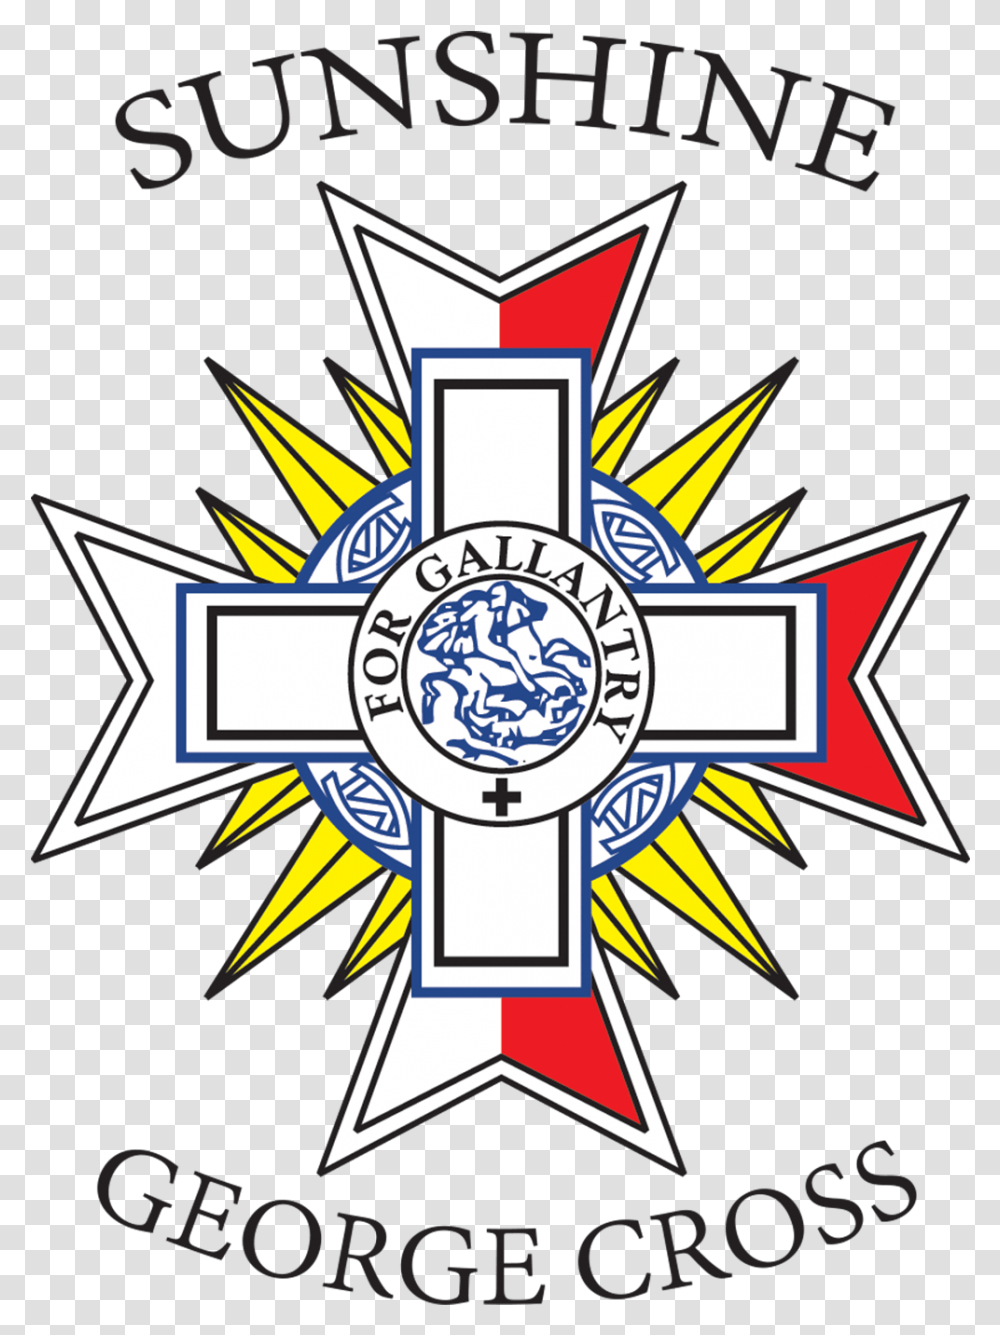 Melbourne Based Maltese Club Sunshine George Cross Fc, Emblem, Logo, Trademark Transparent Png